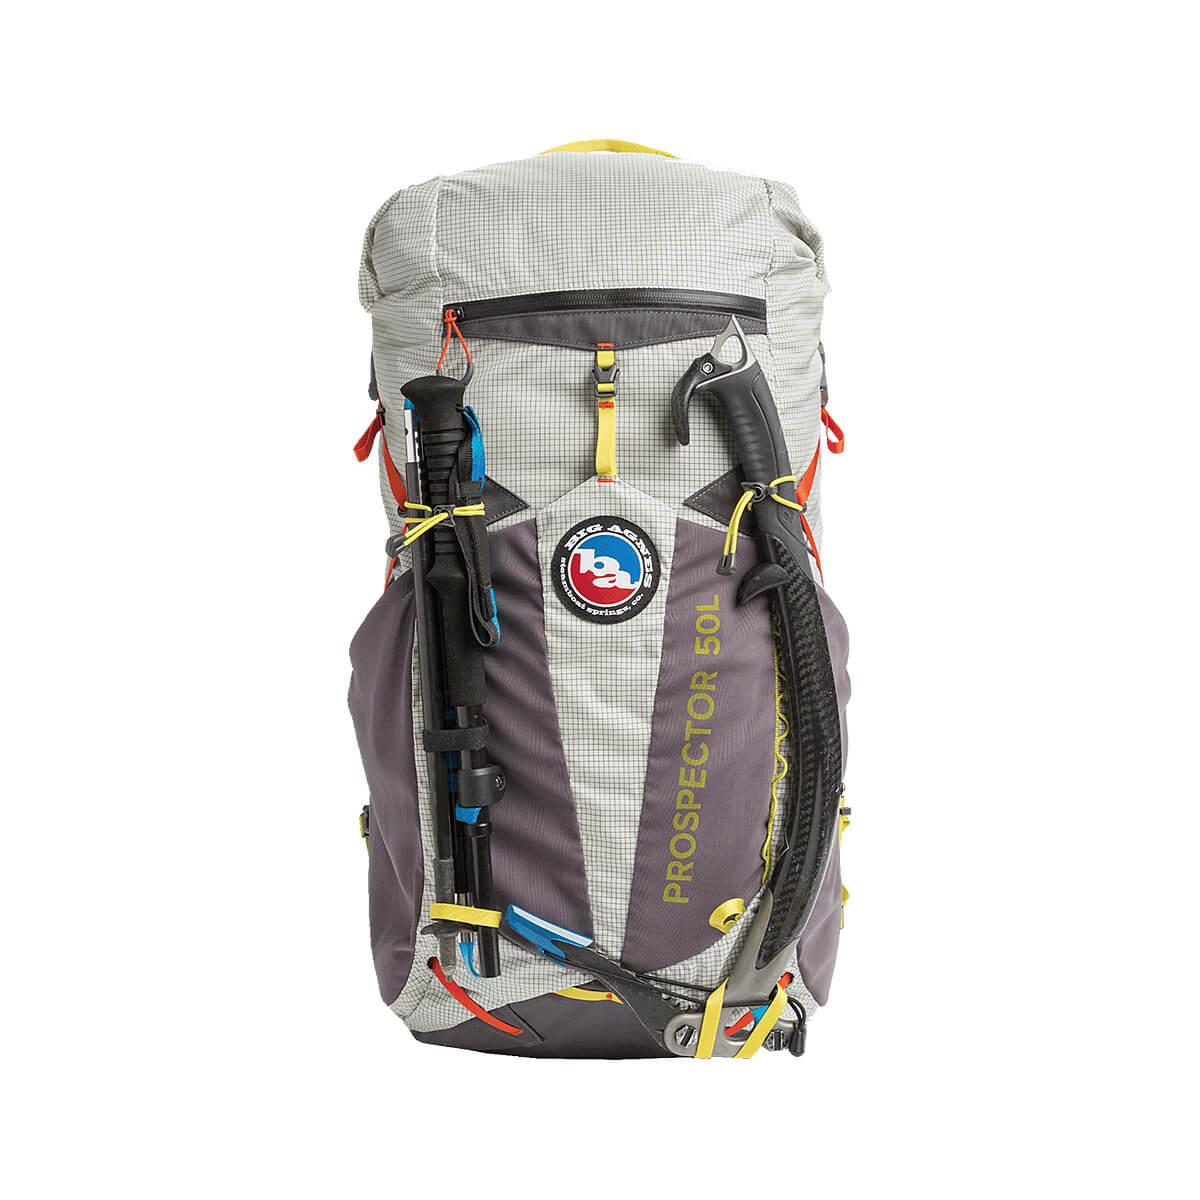  Men's Prospector 50l Backpack - Large